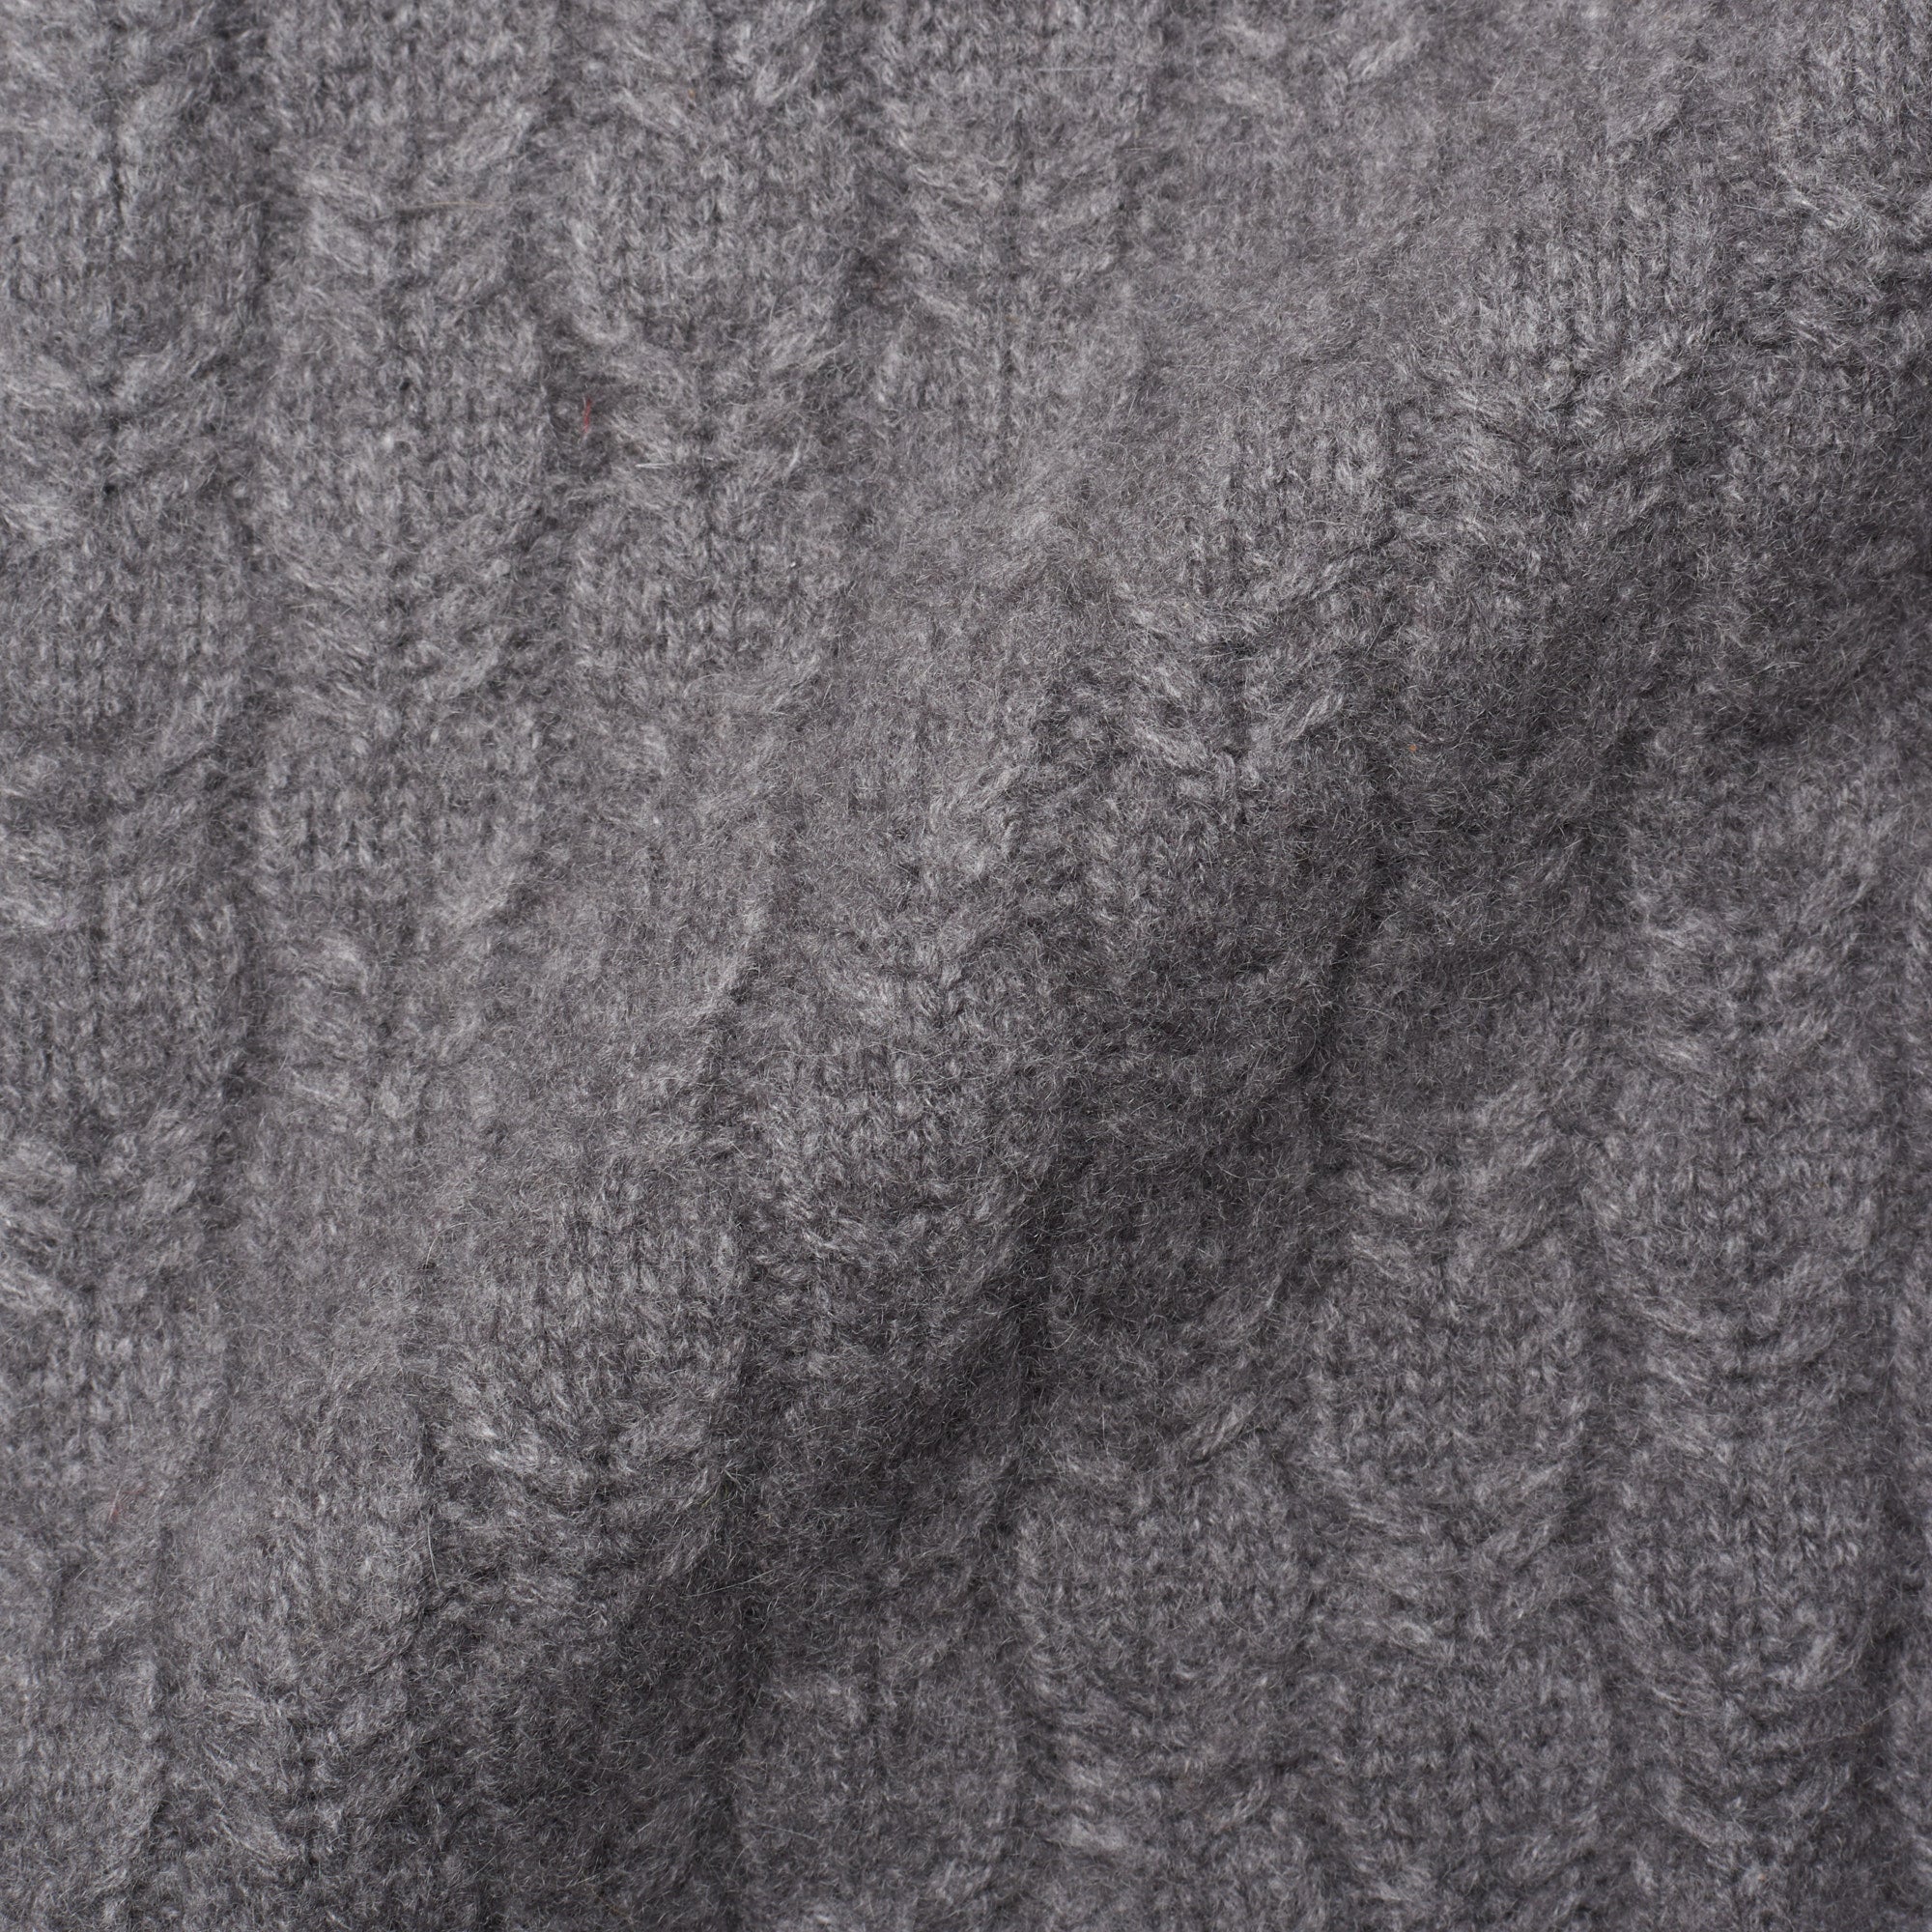 RALPH LAUREN Size M Black Silk and Cashmere Textured